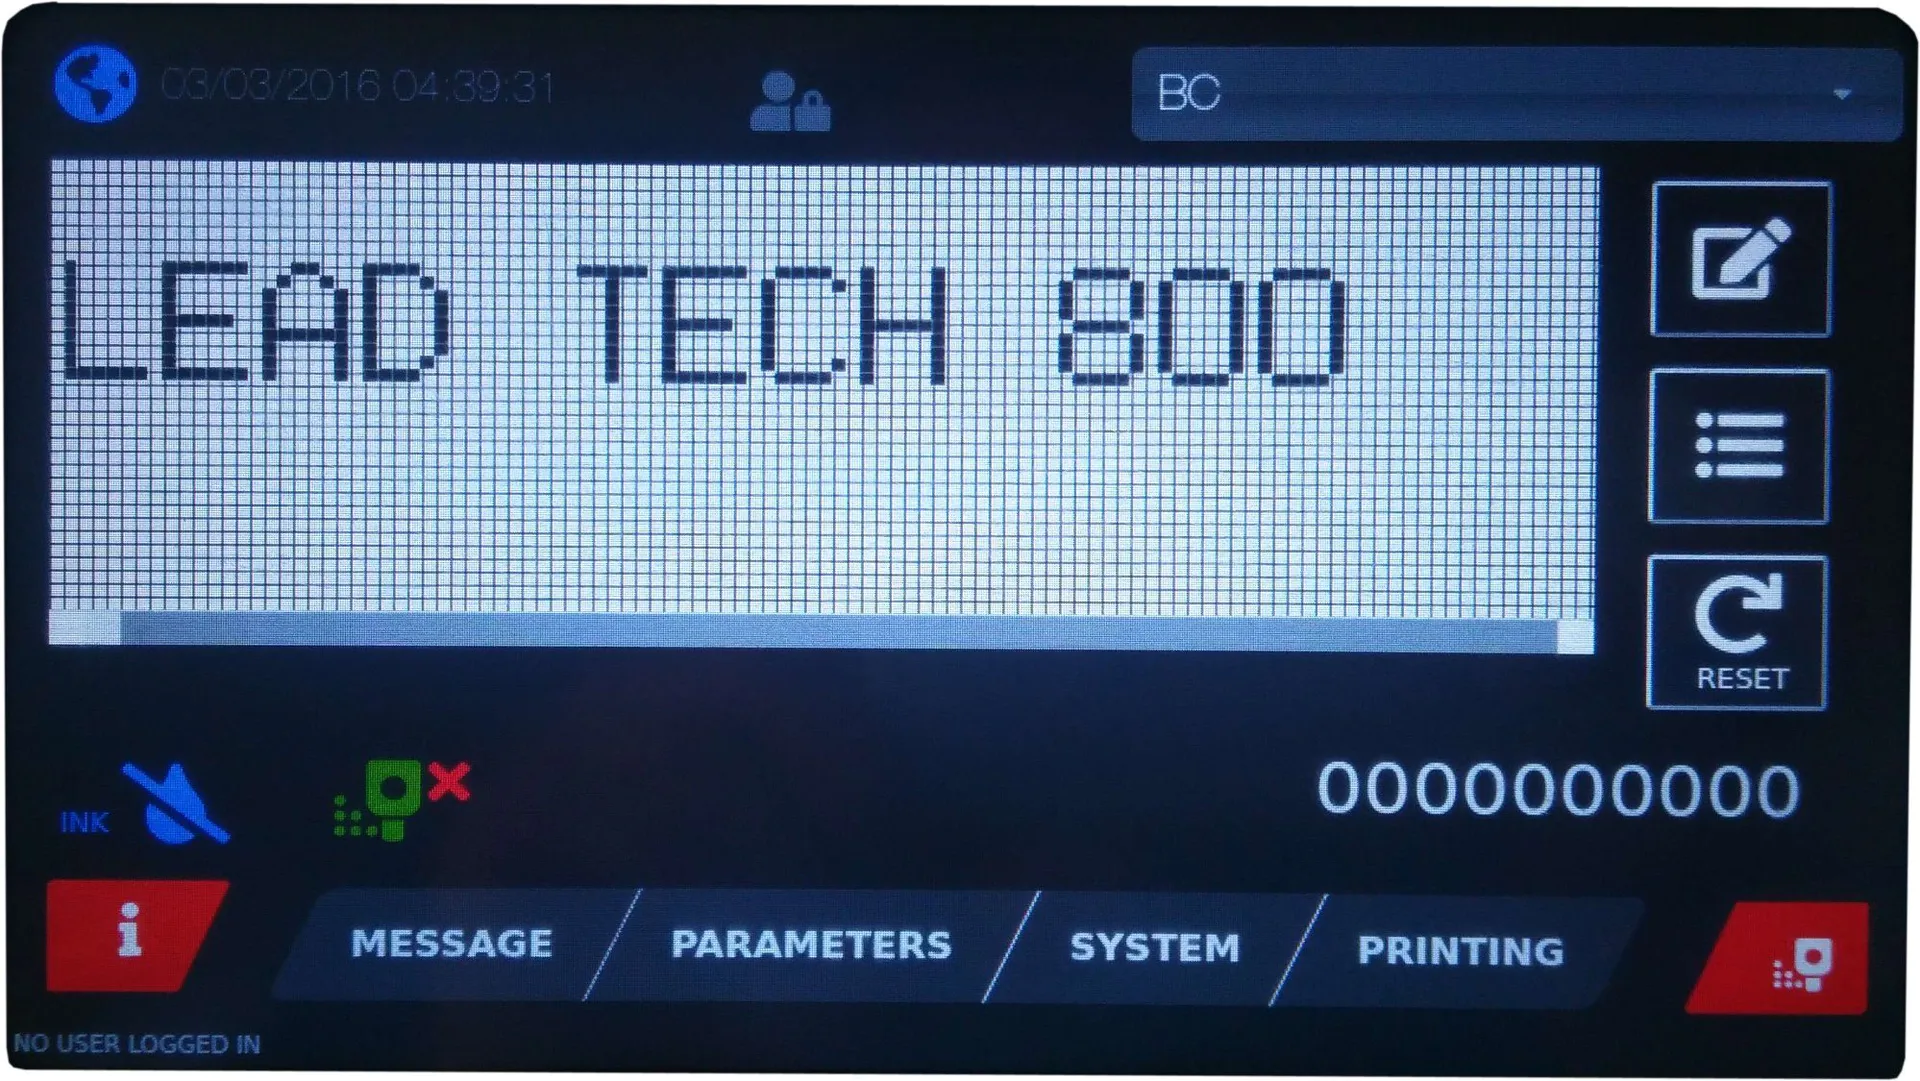 Lead Tech Lt800 Egg Coding Printer Expiry Date Inkjet Printer